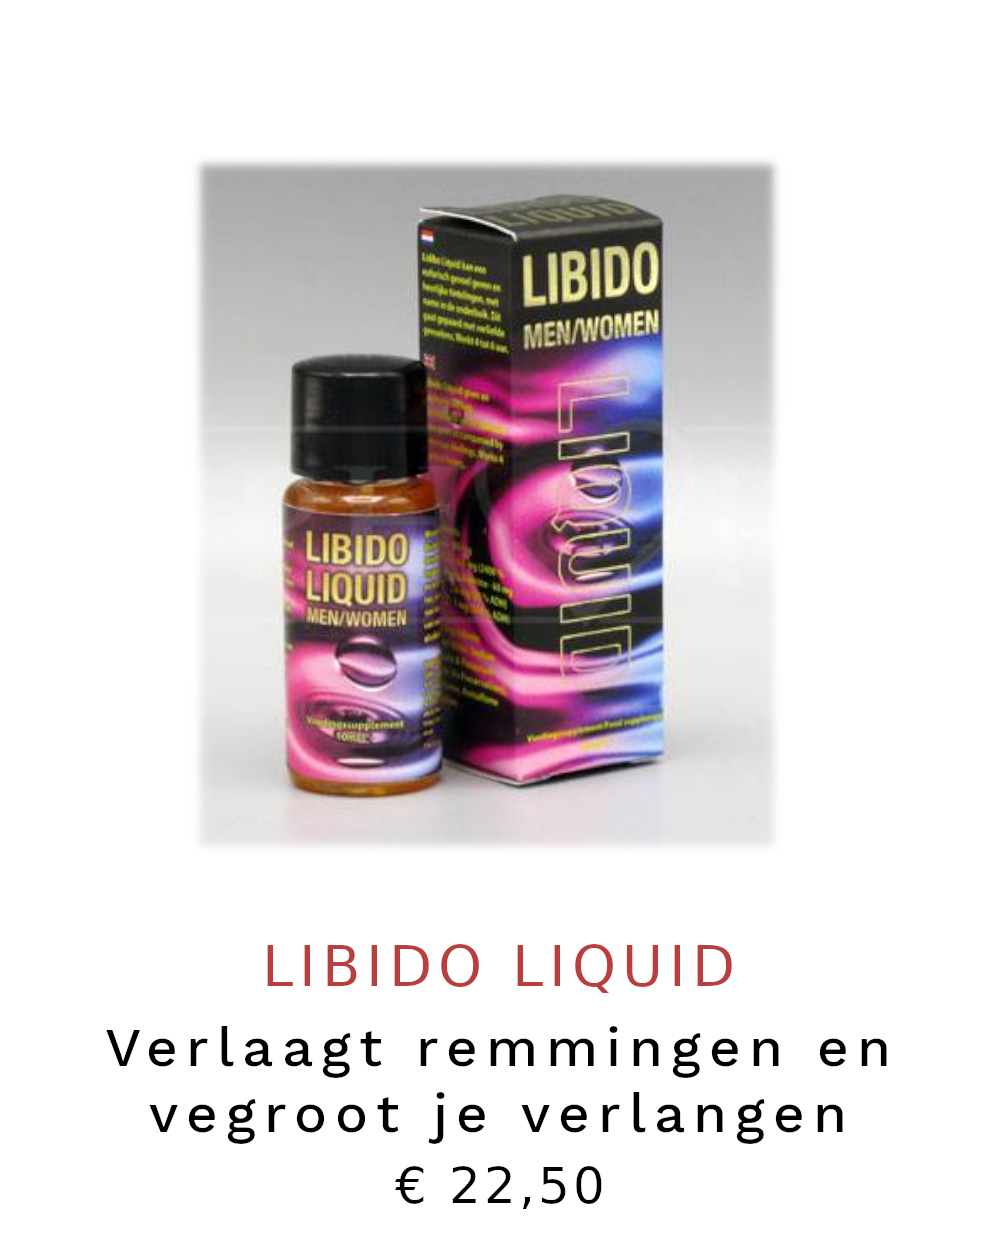 Libido liquid, libidomiddel voor hem en haar